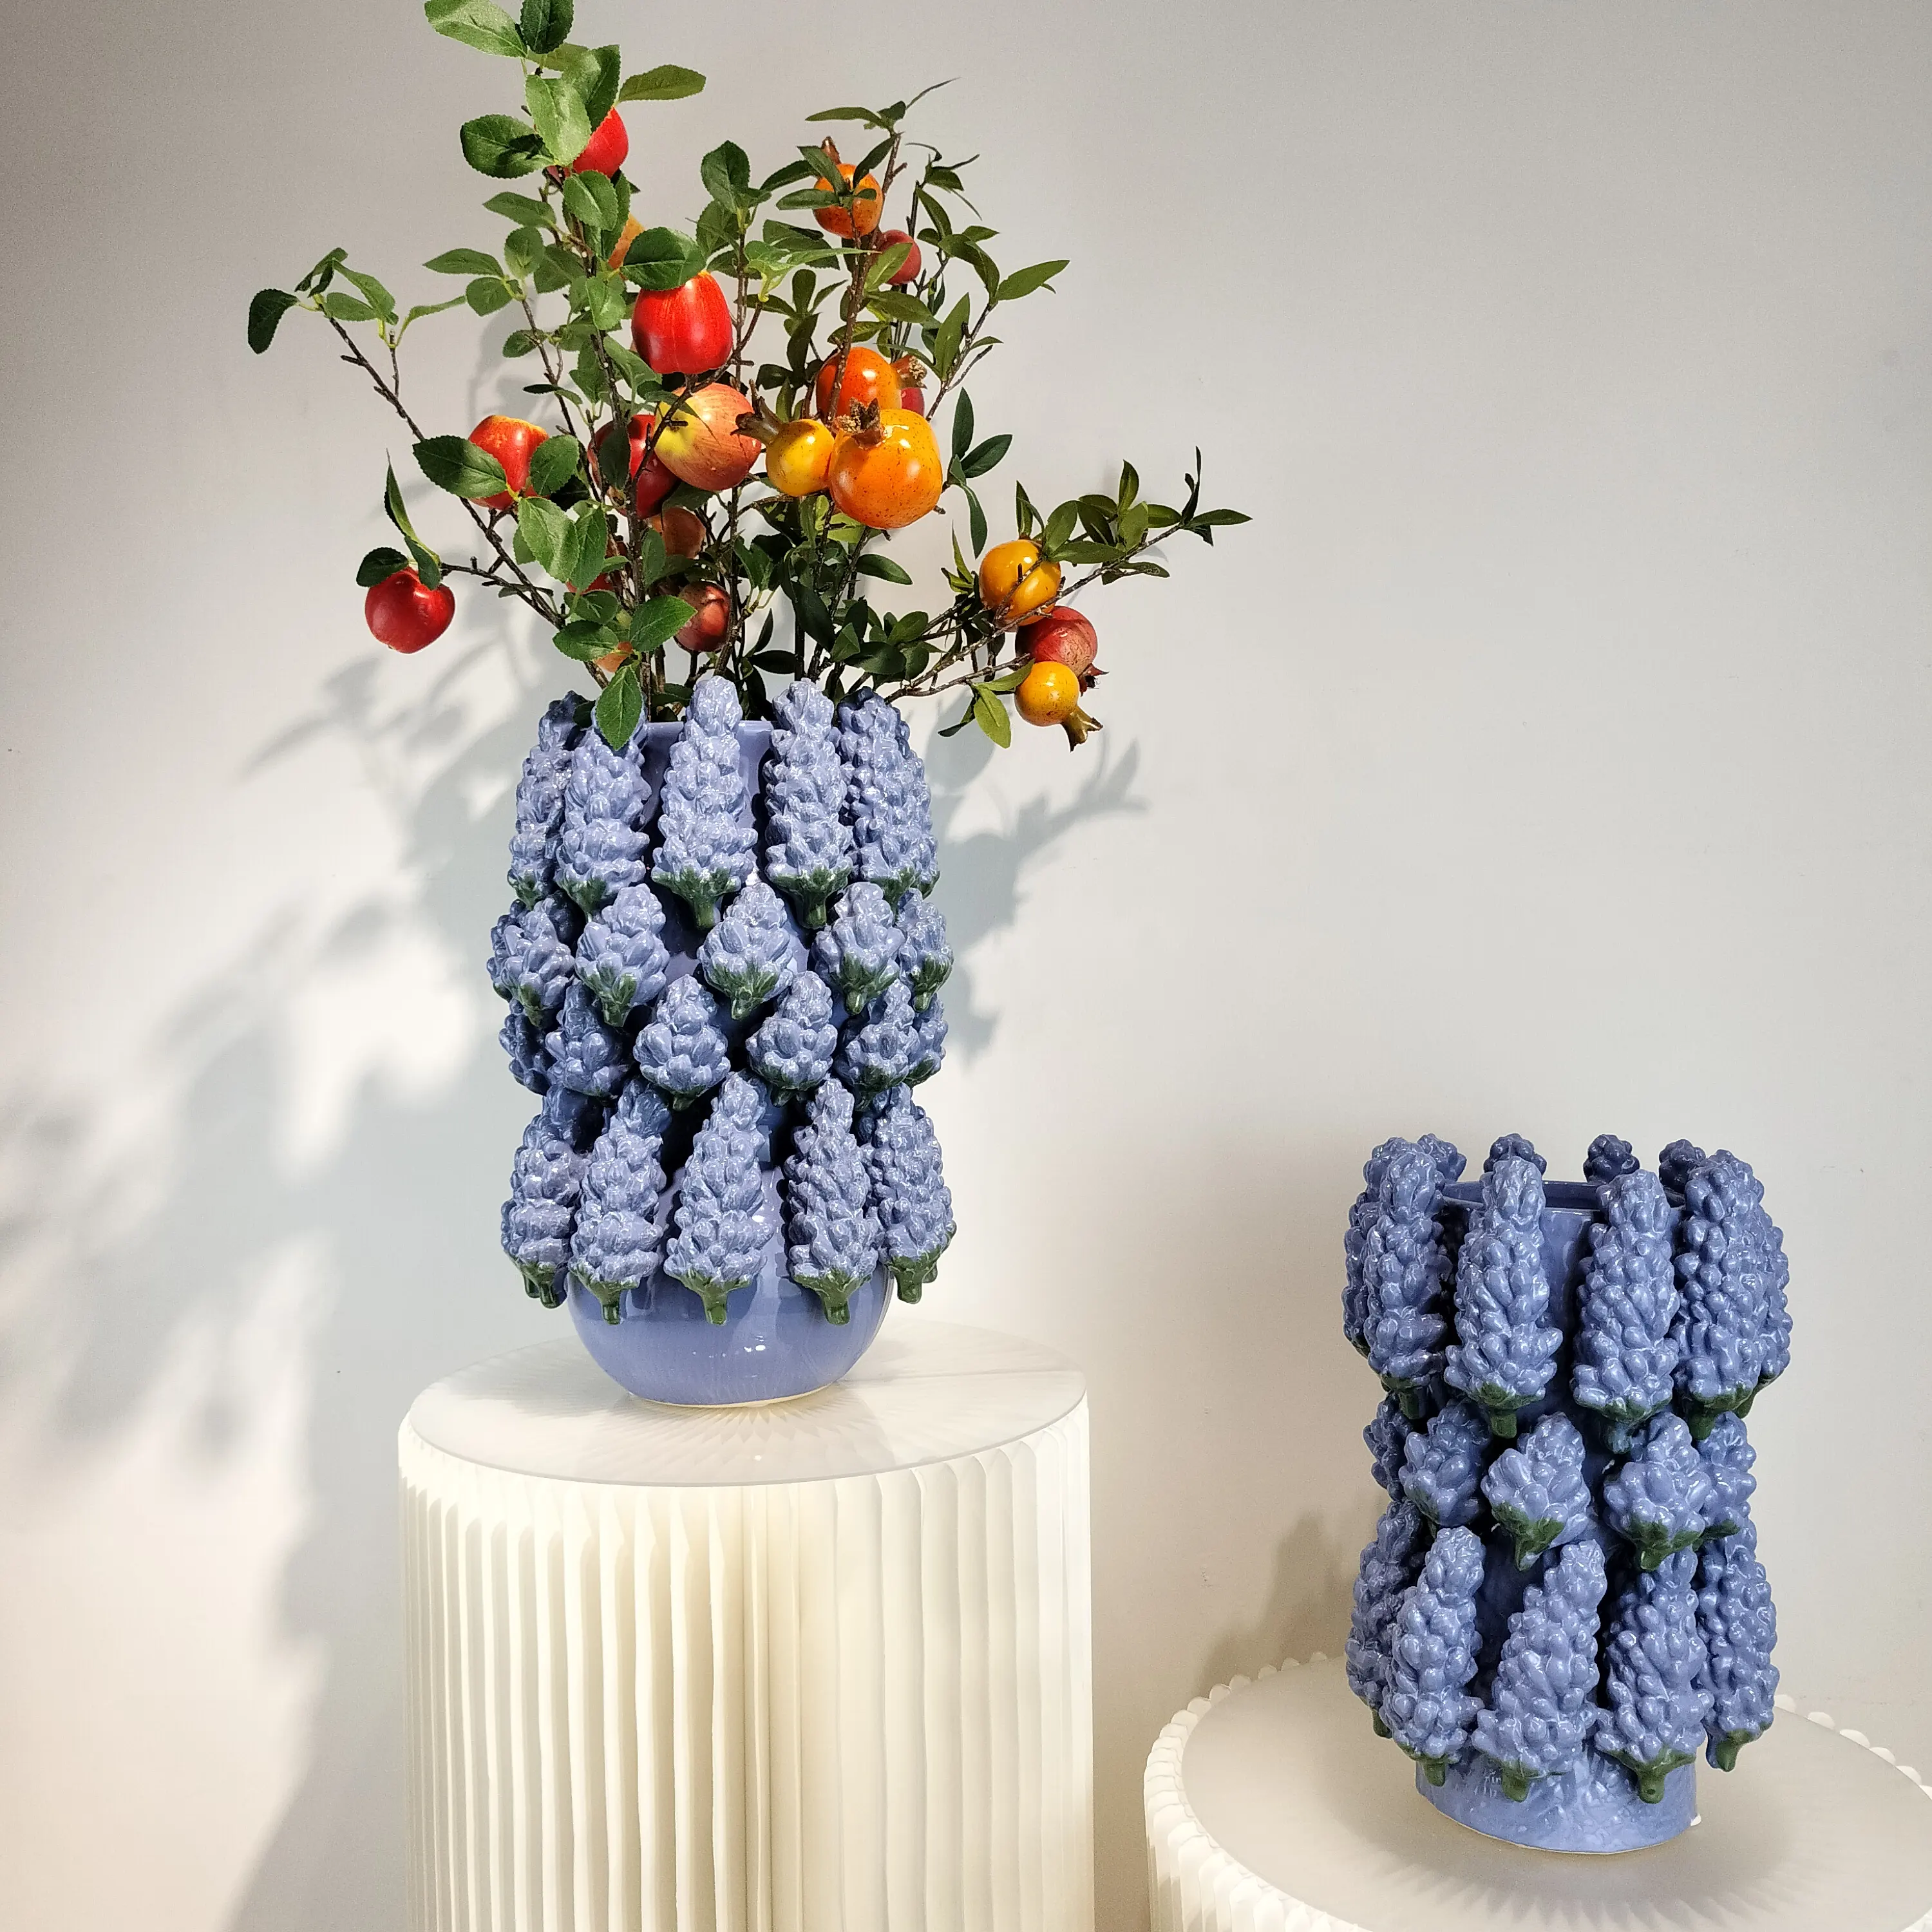 Chinesische Fabriken stellen hochwertige hand gefertigte dekorative Trauben vasen aus Keramik im europäischen Stil her